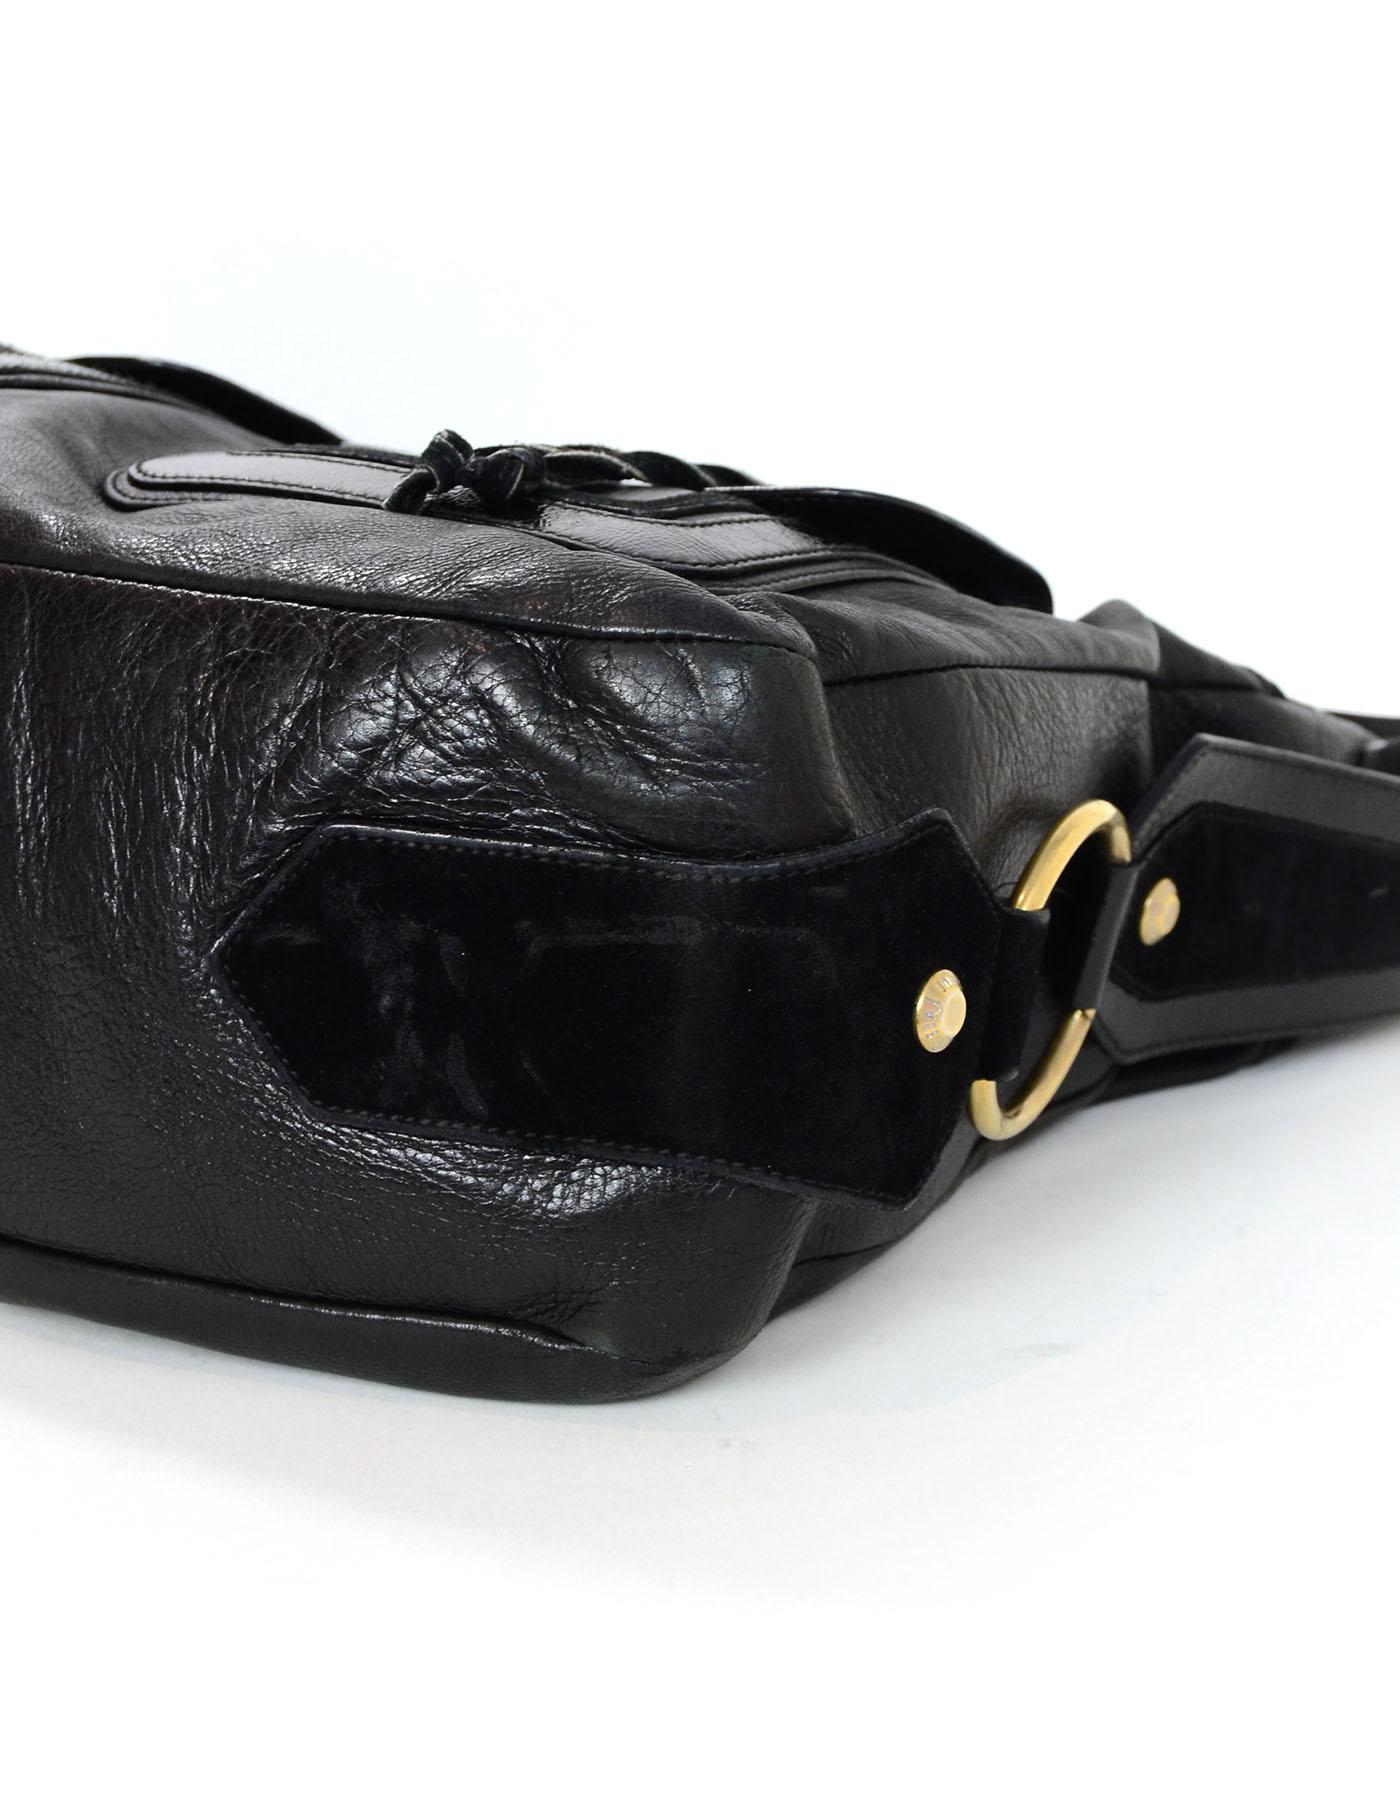 Women's Yves Saint Laurent YSL Black Leather Drawstring Hobo Bag